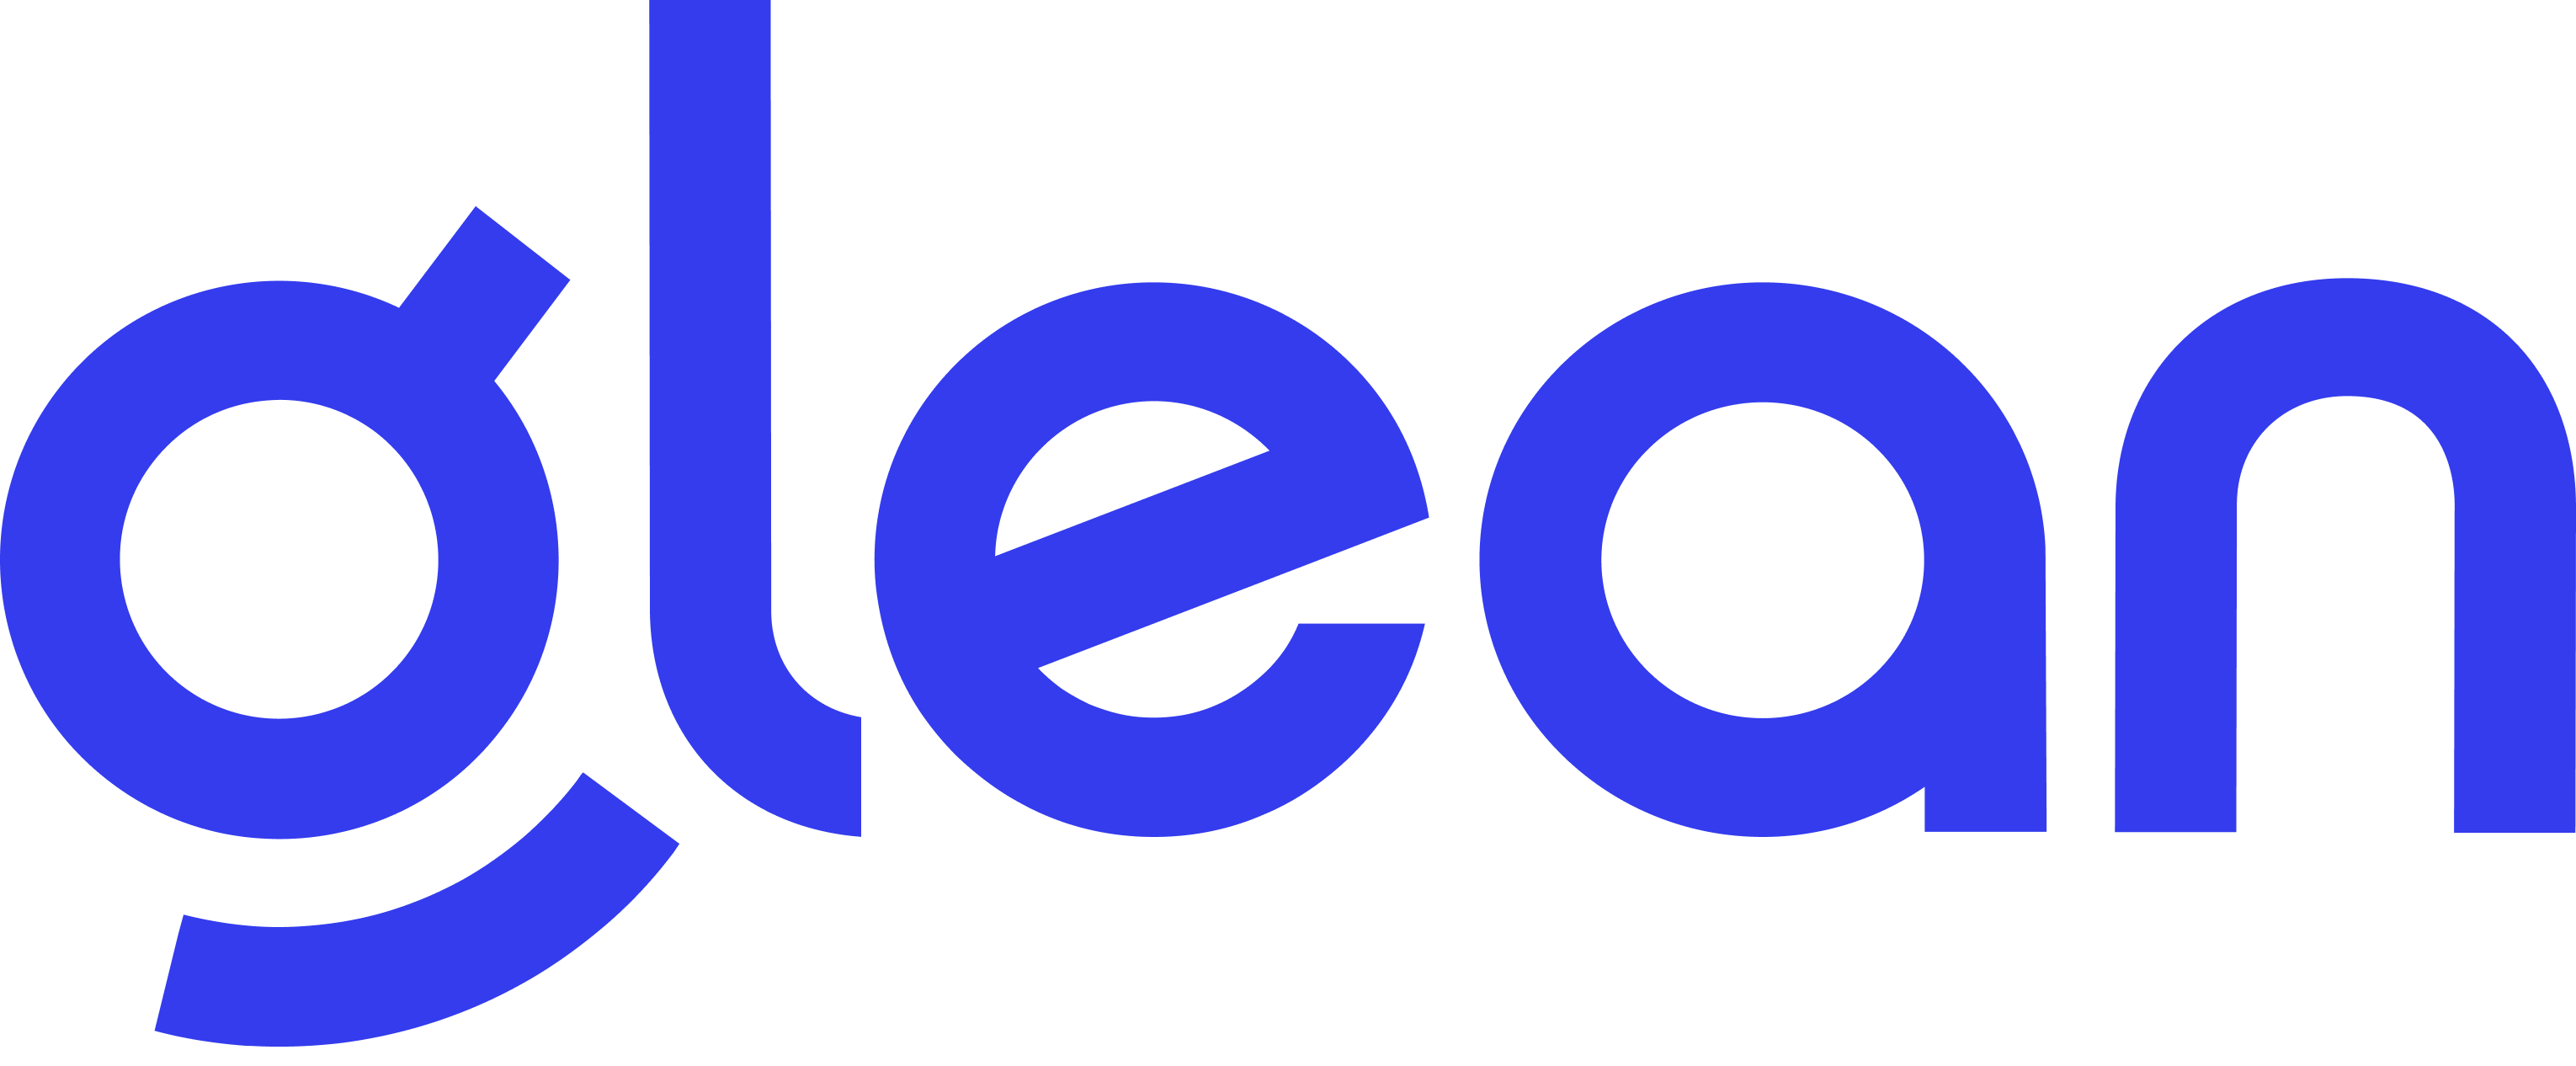 Glean_Logo_Lockup.png